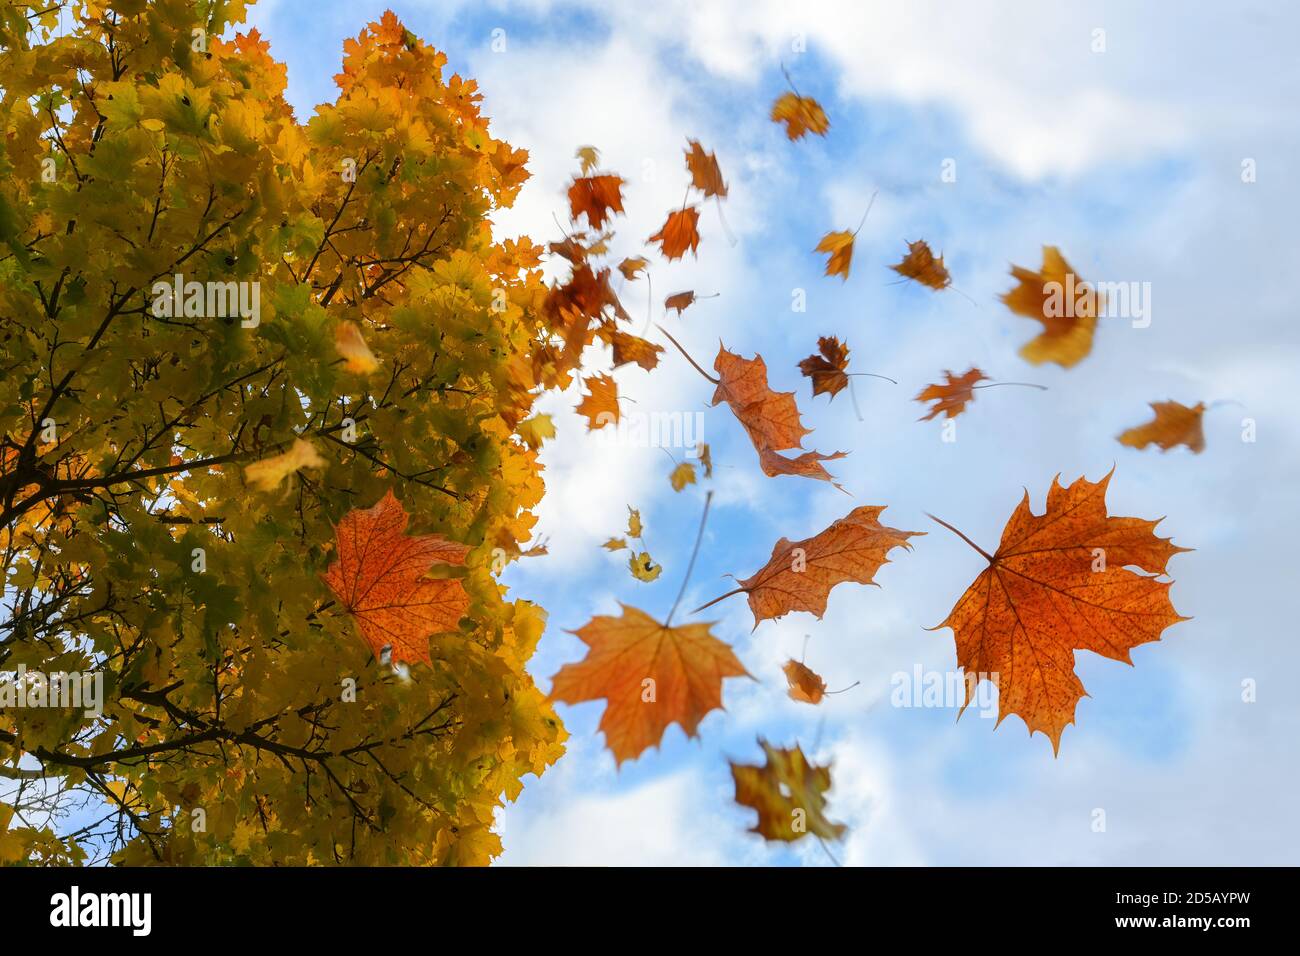 Feuilles d'automne colorées en rouge et or tombant d'un érable, ciel bleu avec des nuages, flou de mouvement, mise au point sélectionnée, profondeur de champ étroite Banque D'Images